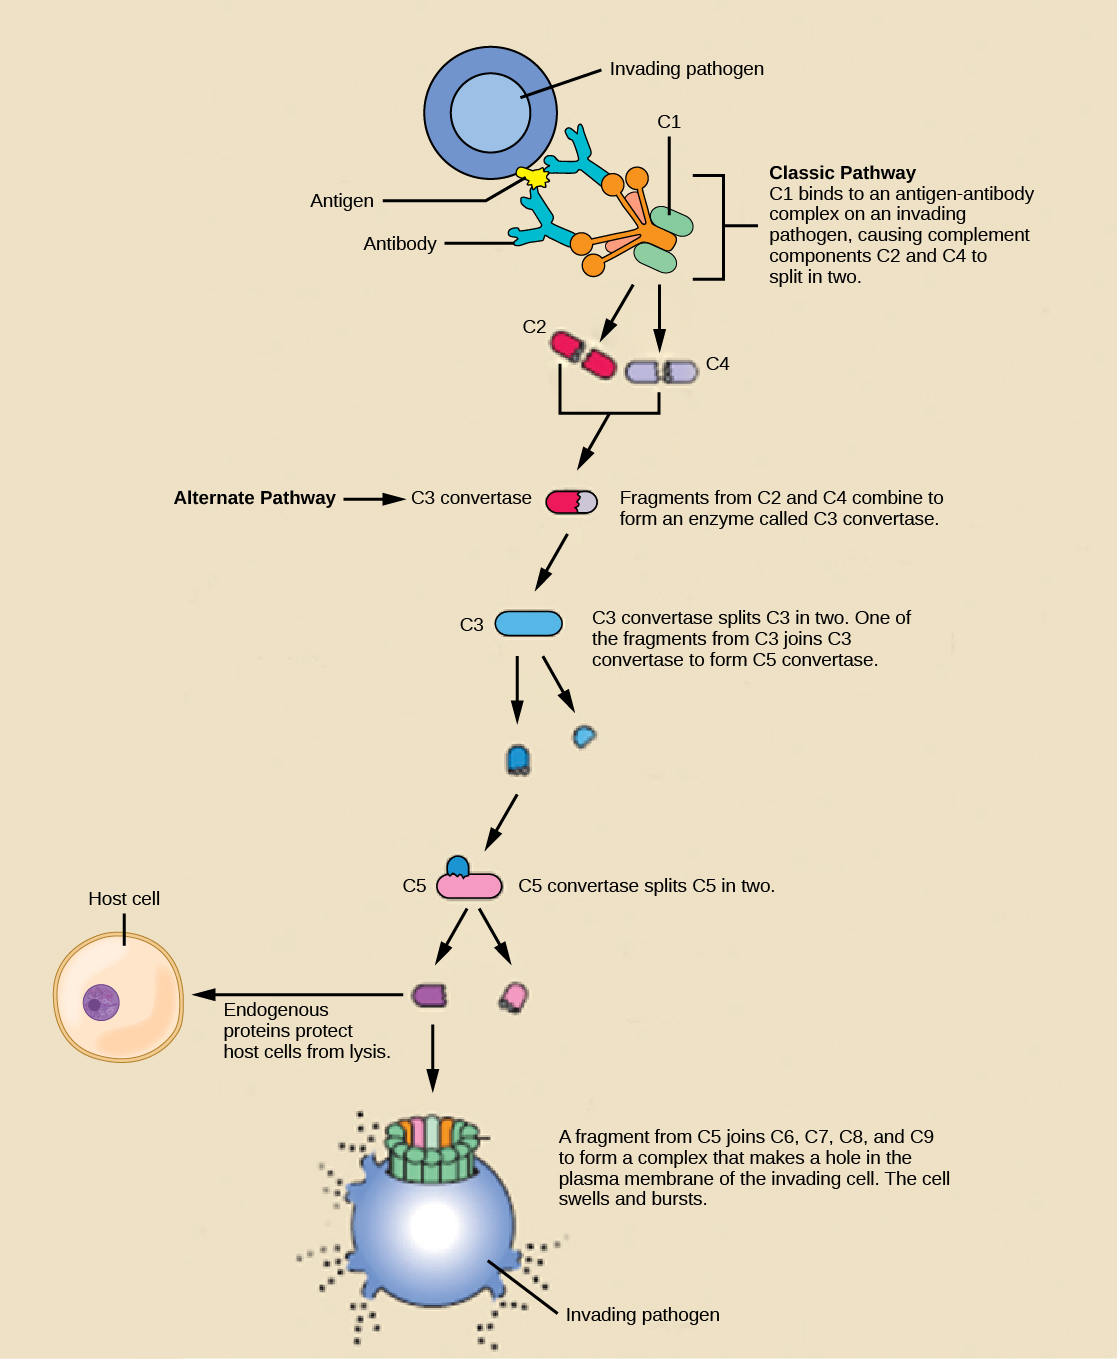 插图显示了一种表面有抗原的入侵病原体。 在传统的补体激活途径中，宿主抗体结合抗原，而 C1 结合抗体。 C1 抗体复合物导致 C2 和 C4 各分裂成两半。 来自 C2 和 C4 的片段各自结合在一起形成一种叫做 C3 转化酶的酶。 c3Convertase 将 C3 一分为二。 来自 C3 的其中一个片段加入 C3 转换酶形成了 C5 转换酶。 C5 转换器将 C5 一分为二。 来自 C5 的片段结合 C6、C7、C8 和 C9，形成复合物，在质膜上为入侵细胞开一个洞。 细胞膨胀和破裂。 在替代途径中，C3 转化酶自发地将 C3 一分为二，其余途径与经典途径相同。 内源性蛋白的存在可以保护宿主细胞免受补体的侵害。